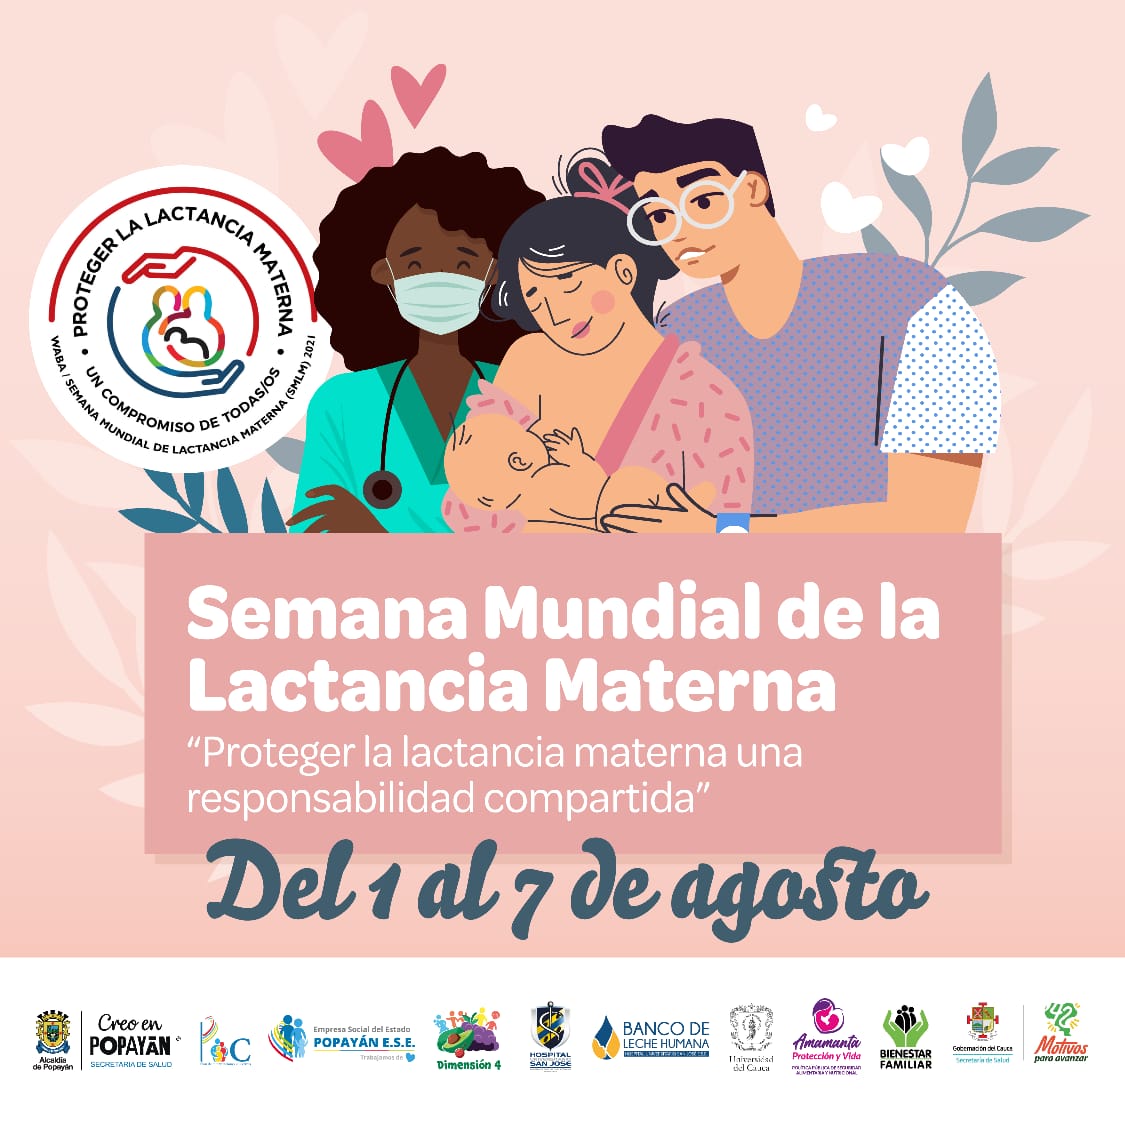 Semana Mundial de la Lactancia Materna. Proteger la lactancia materna